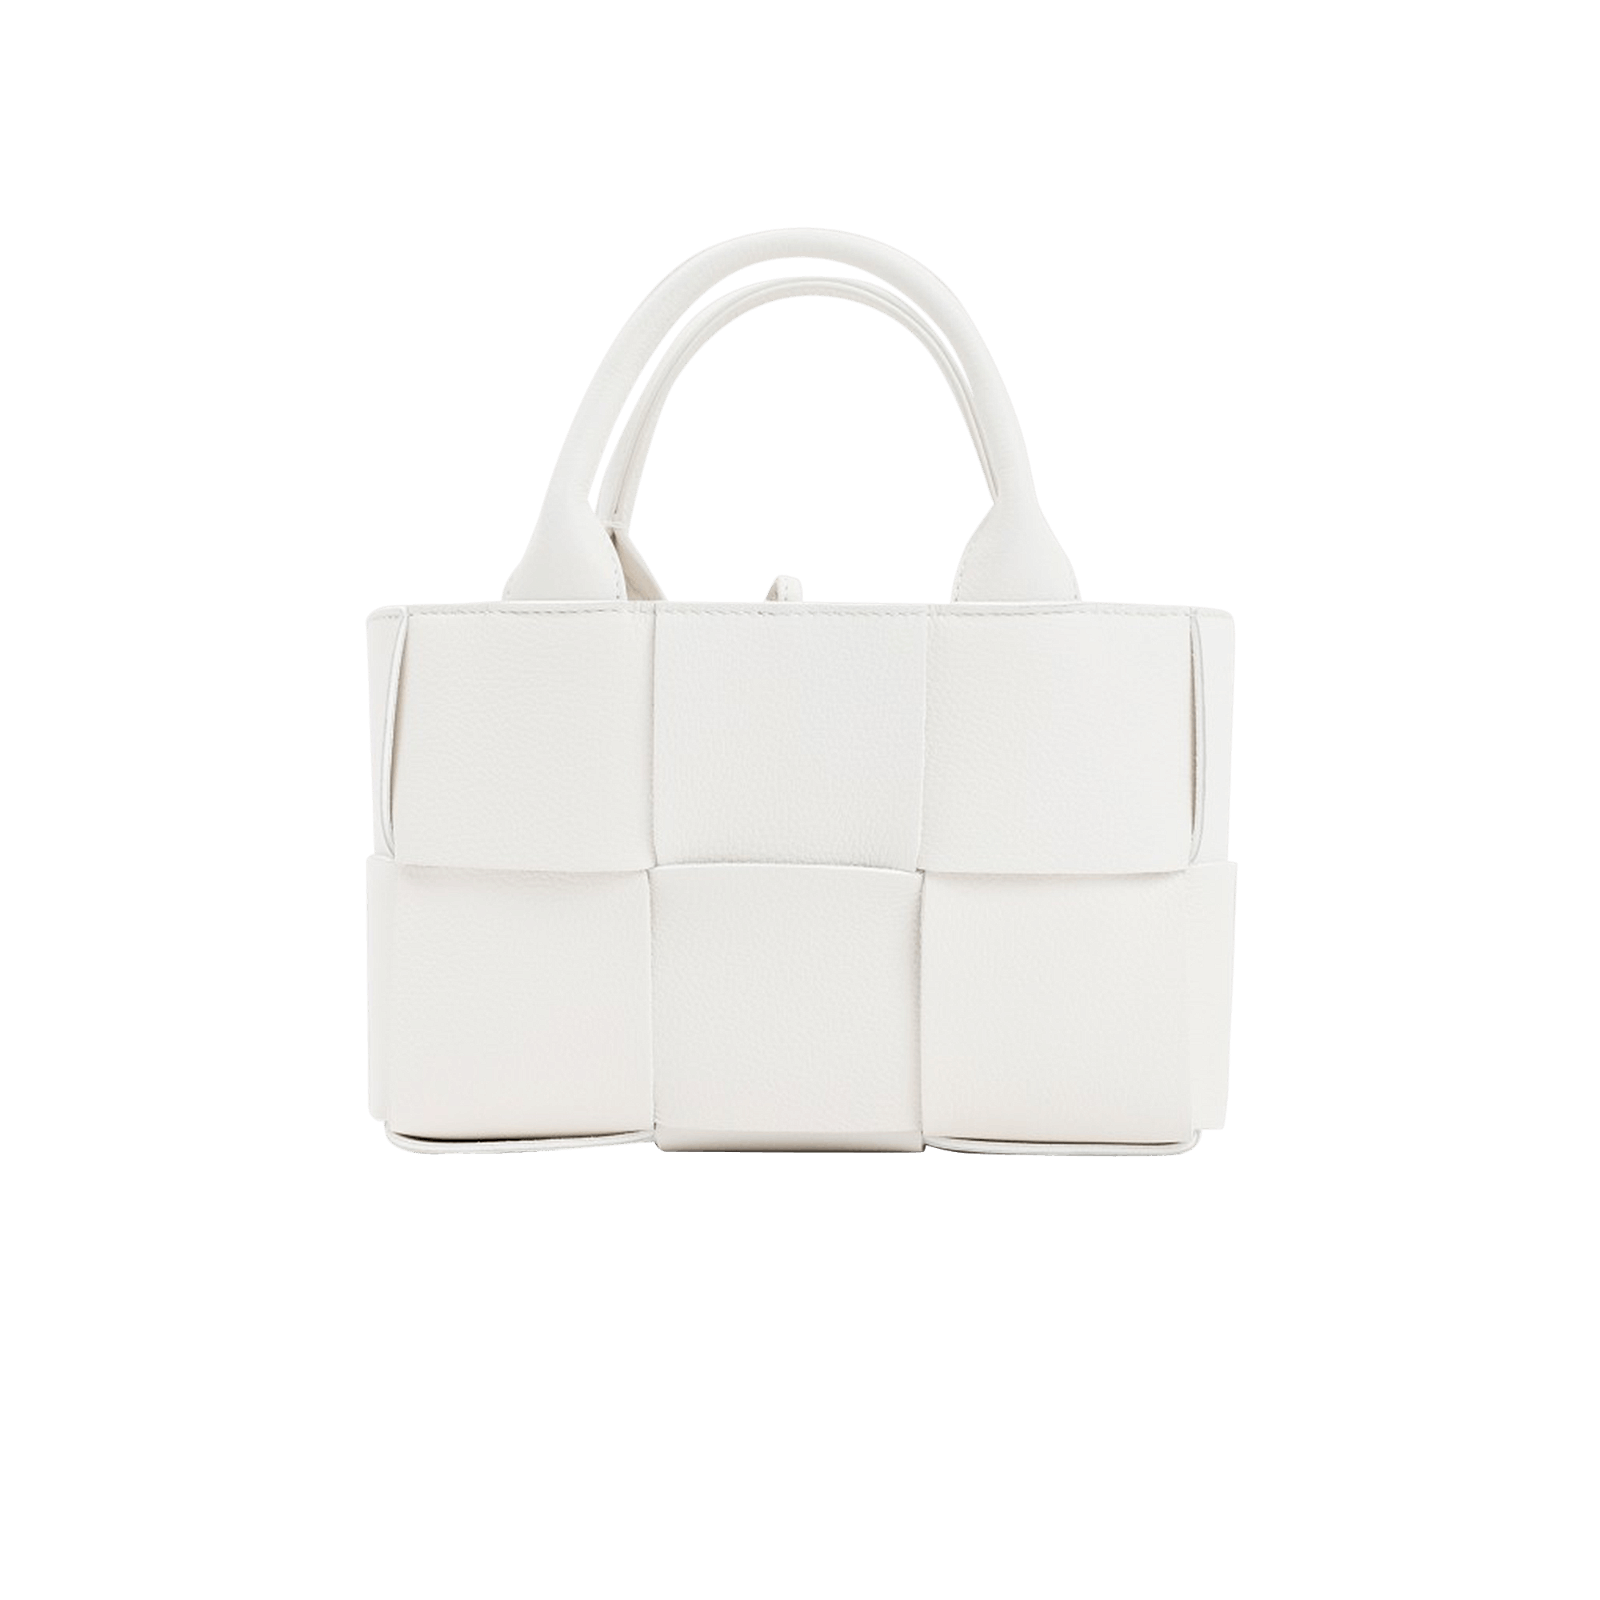 Bottega Veneta Women's Candy Arco Tote Bag - White - Totes